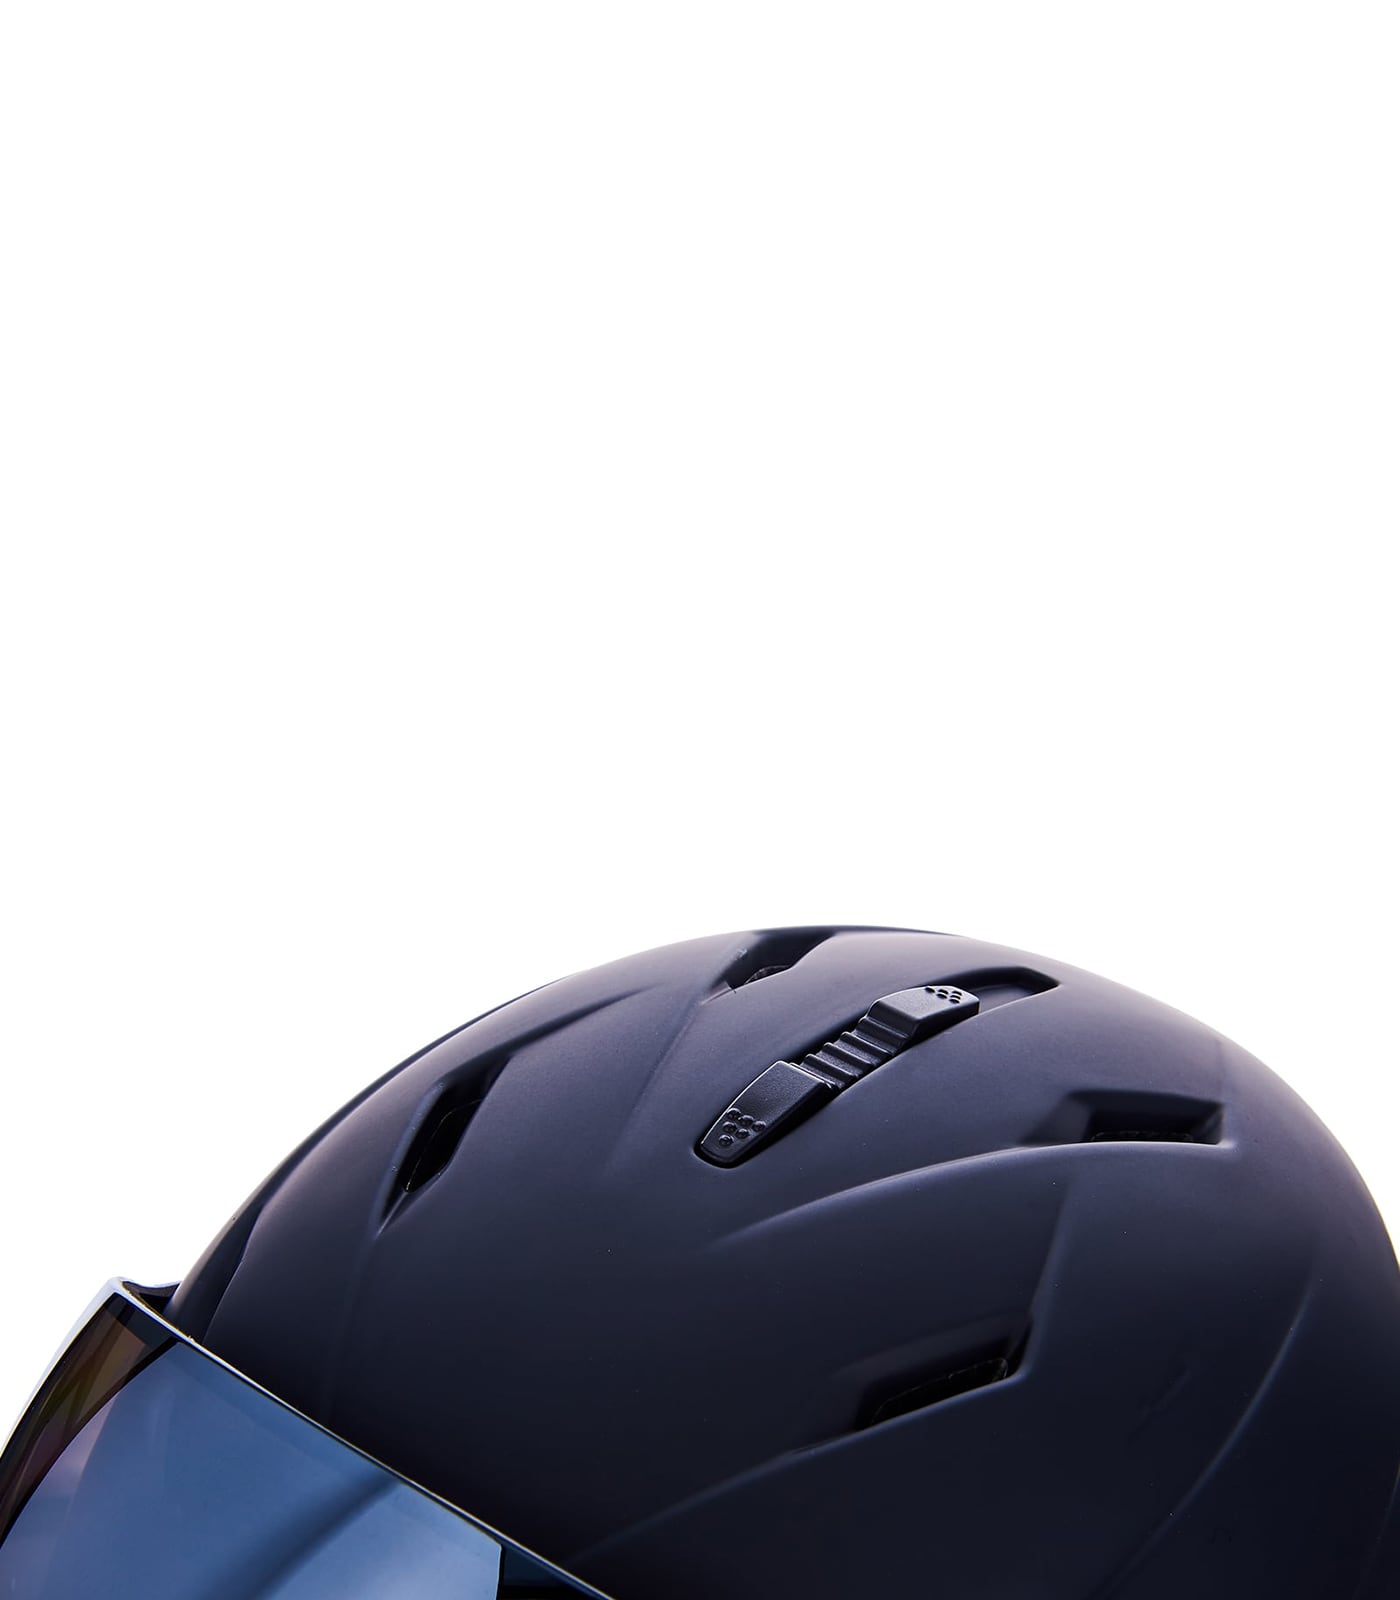 Double Visor ski helmet, black matt, smoke lens, mirror